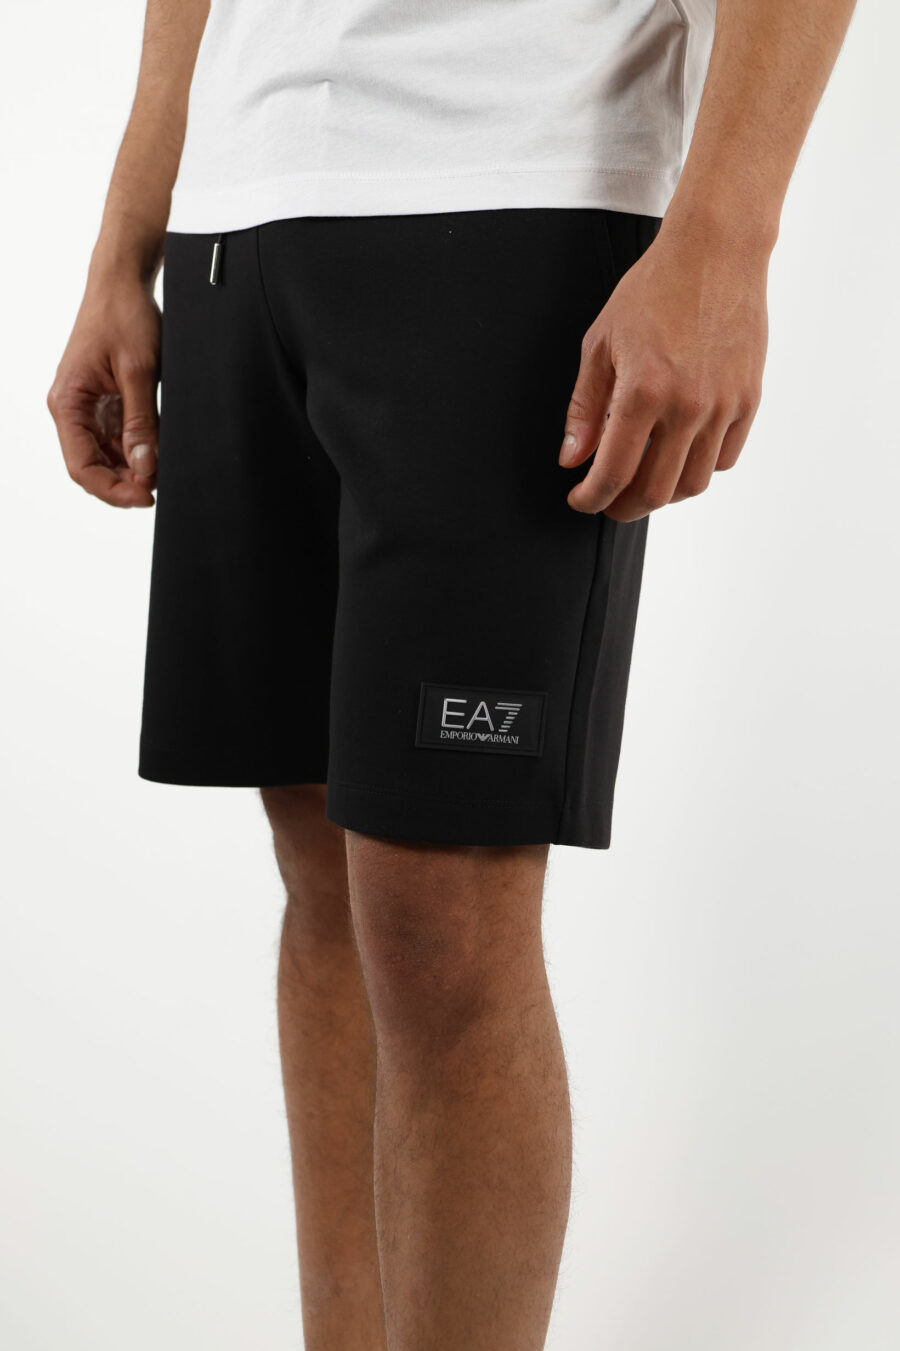 Trainingshose schwarze Shorts mit weißem "lux identity" Minilogo auf schwarzer Platte - 110859